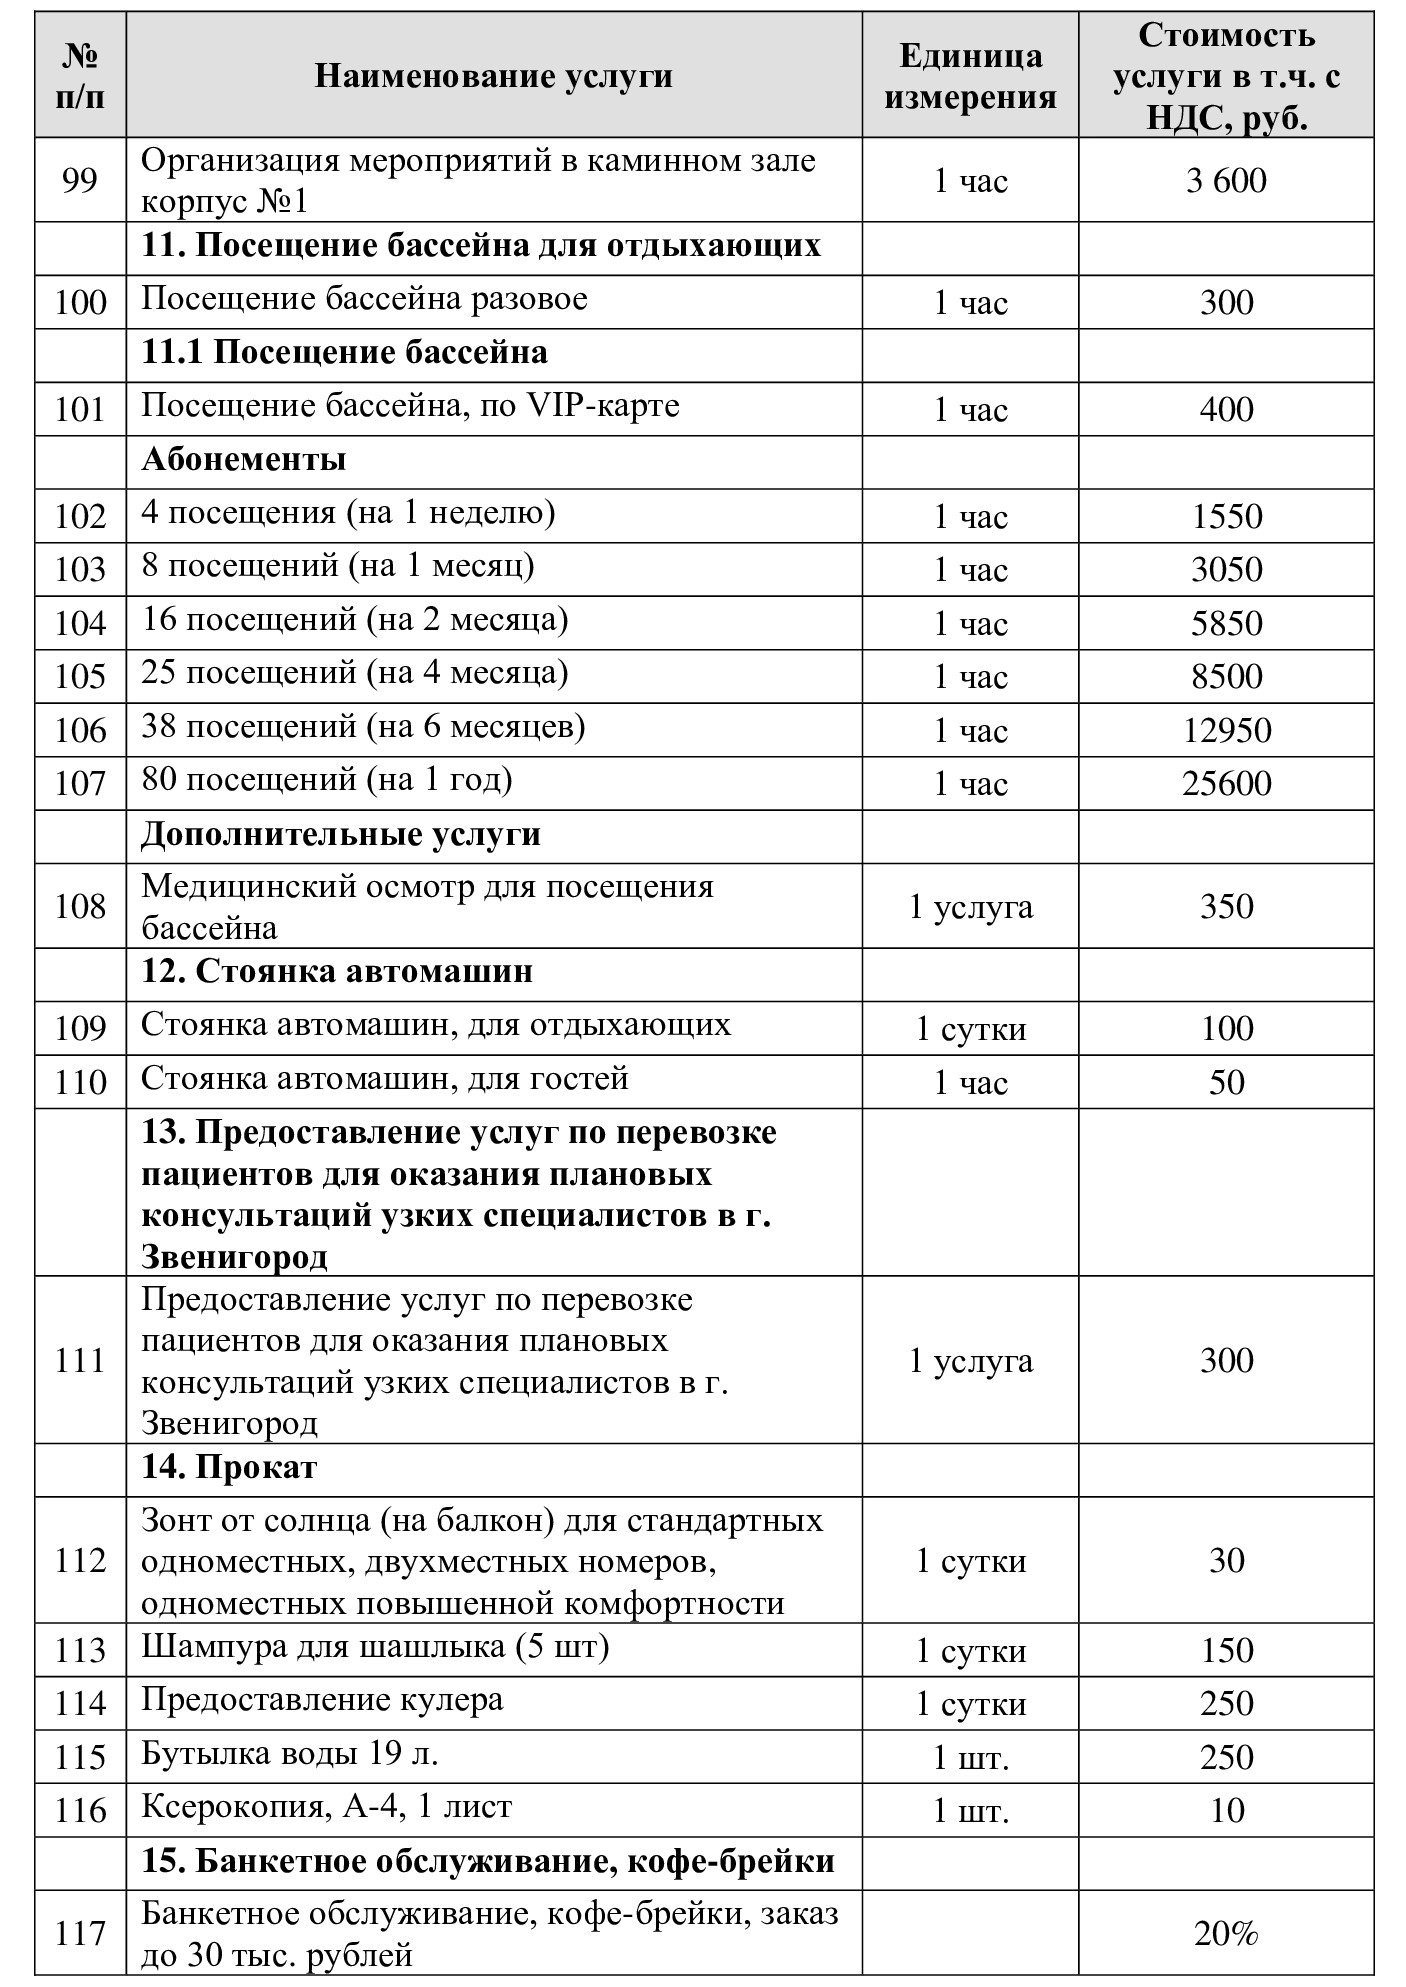 Цены на экскурсии из Санатория "Введенское" (Звенигород)